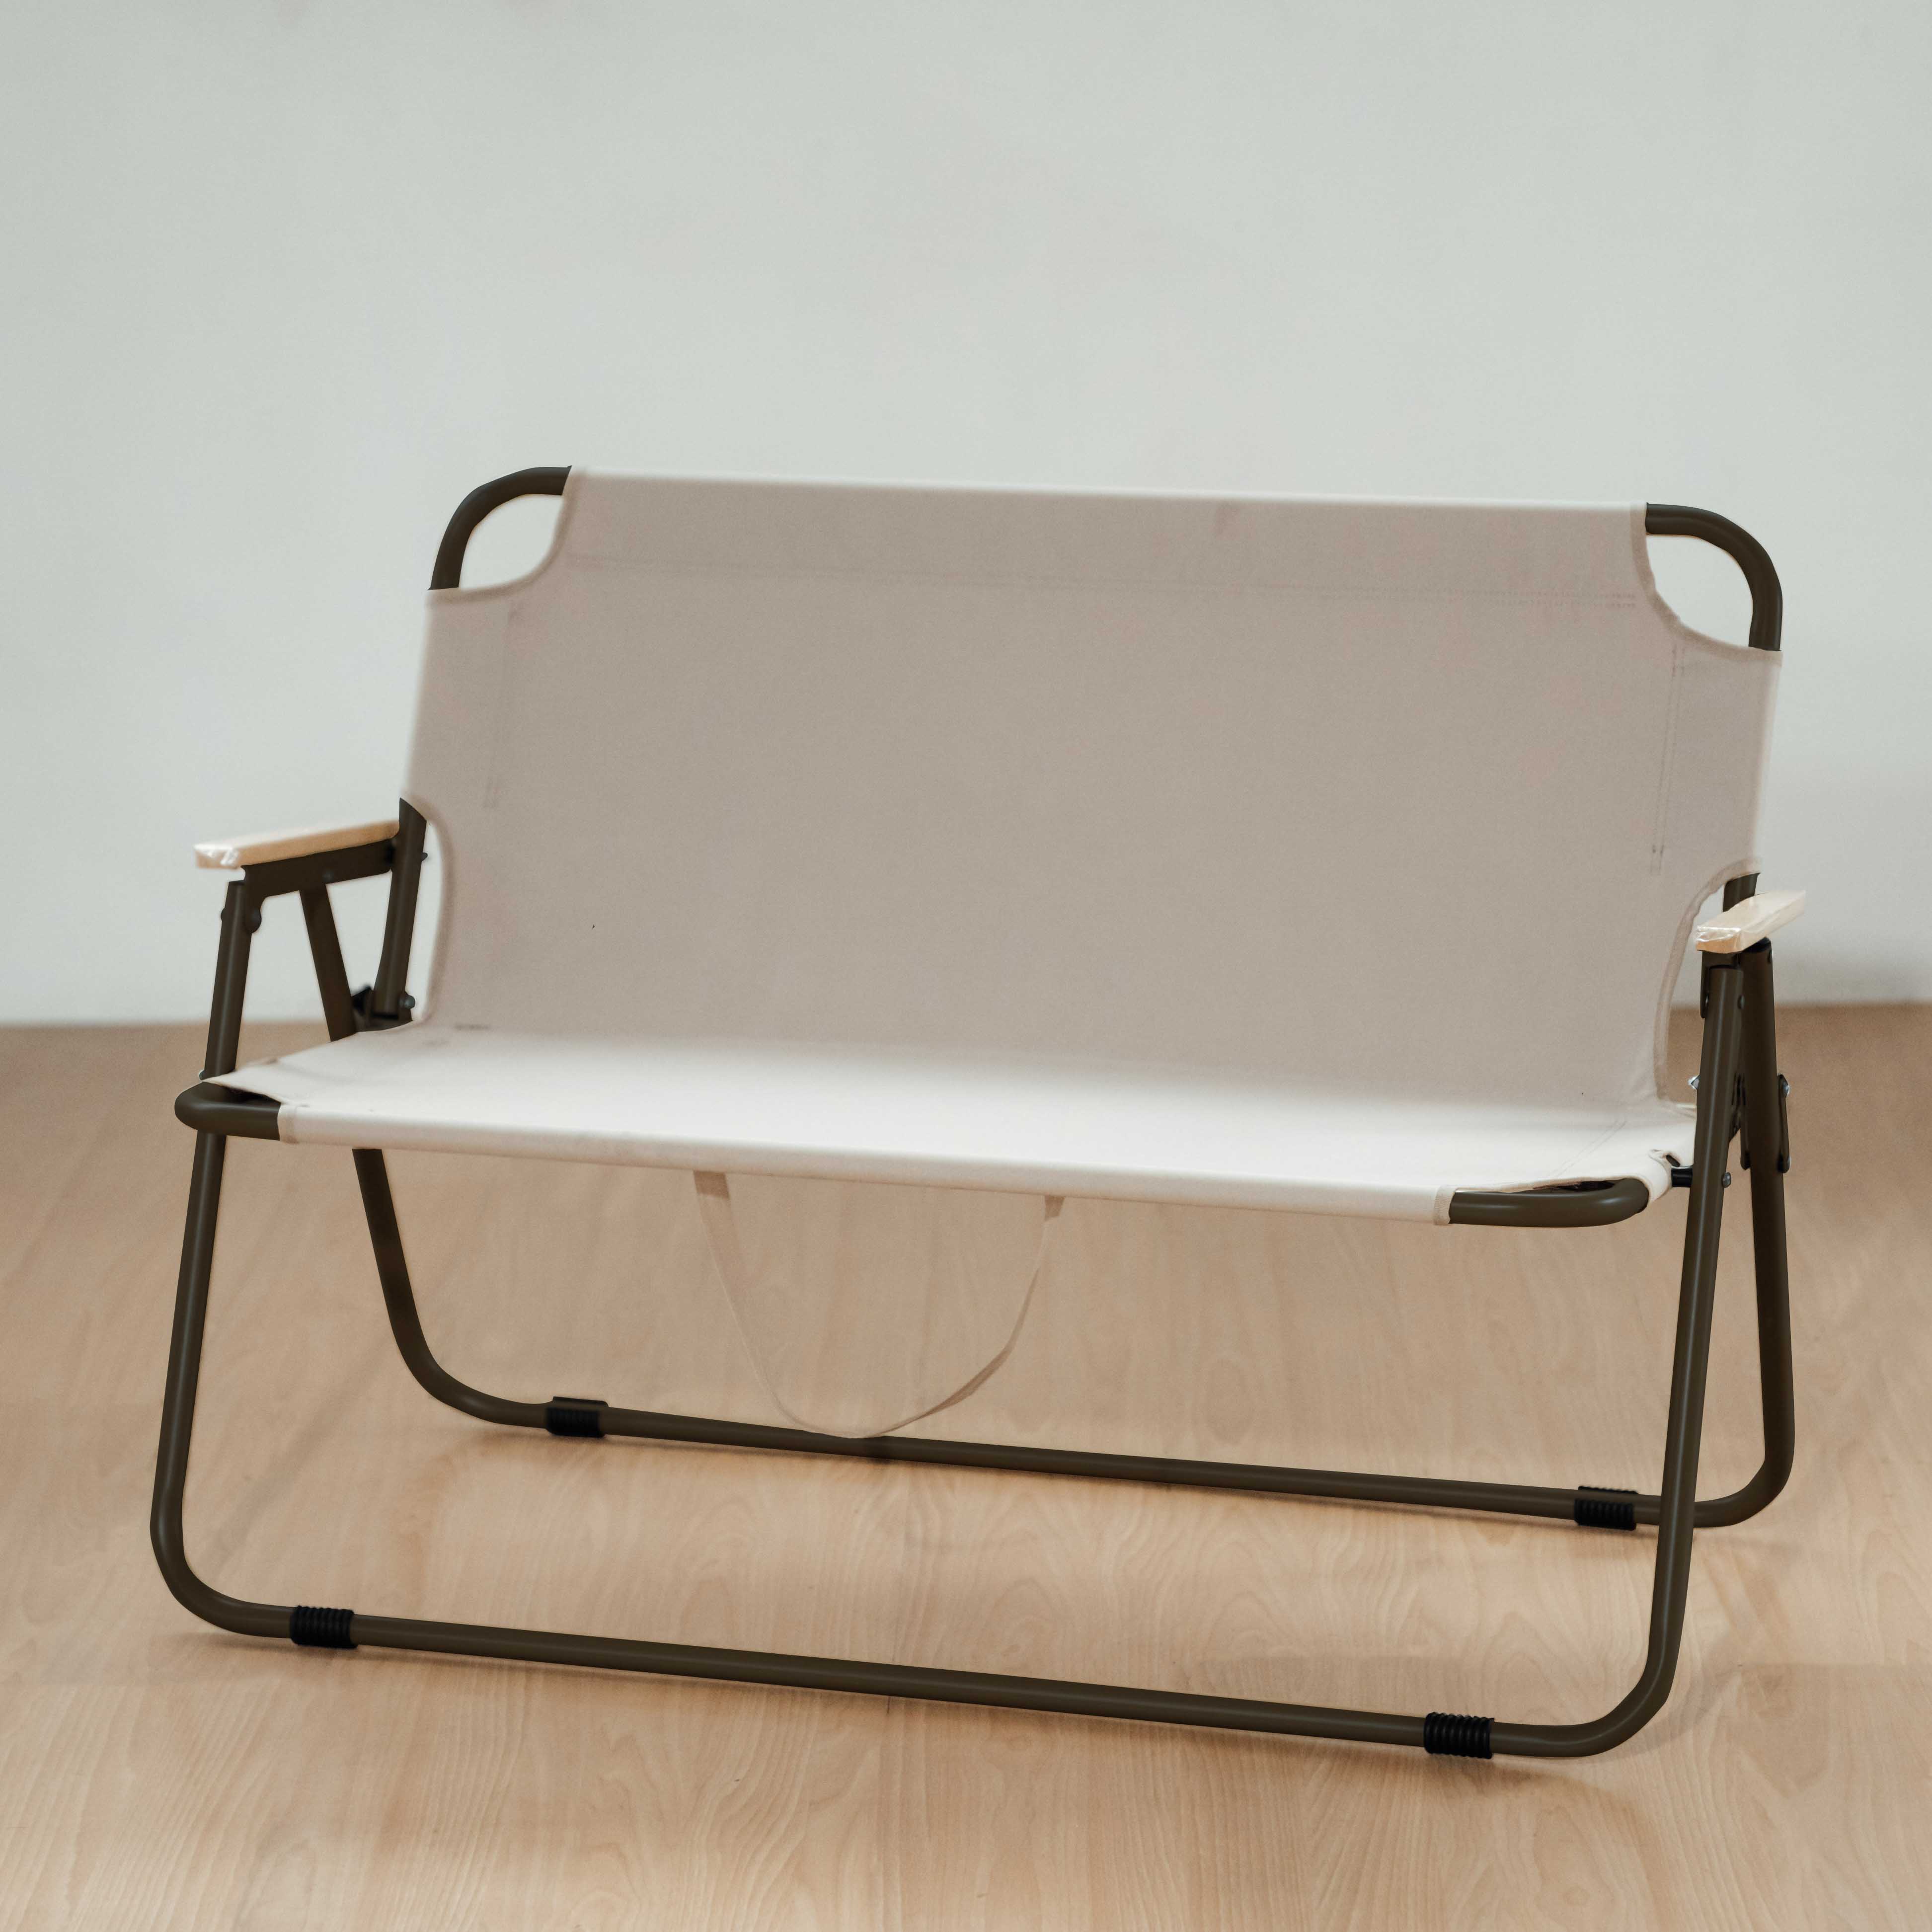 TUMAZ雙人彈簧折疊椅, , large